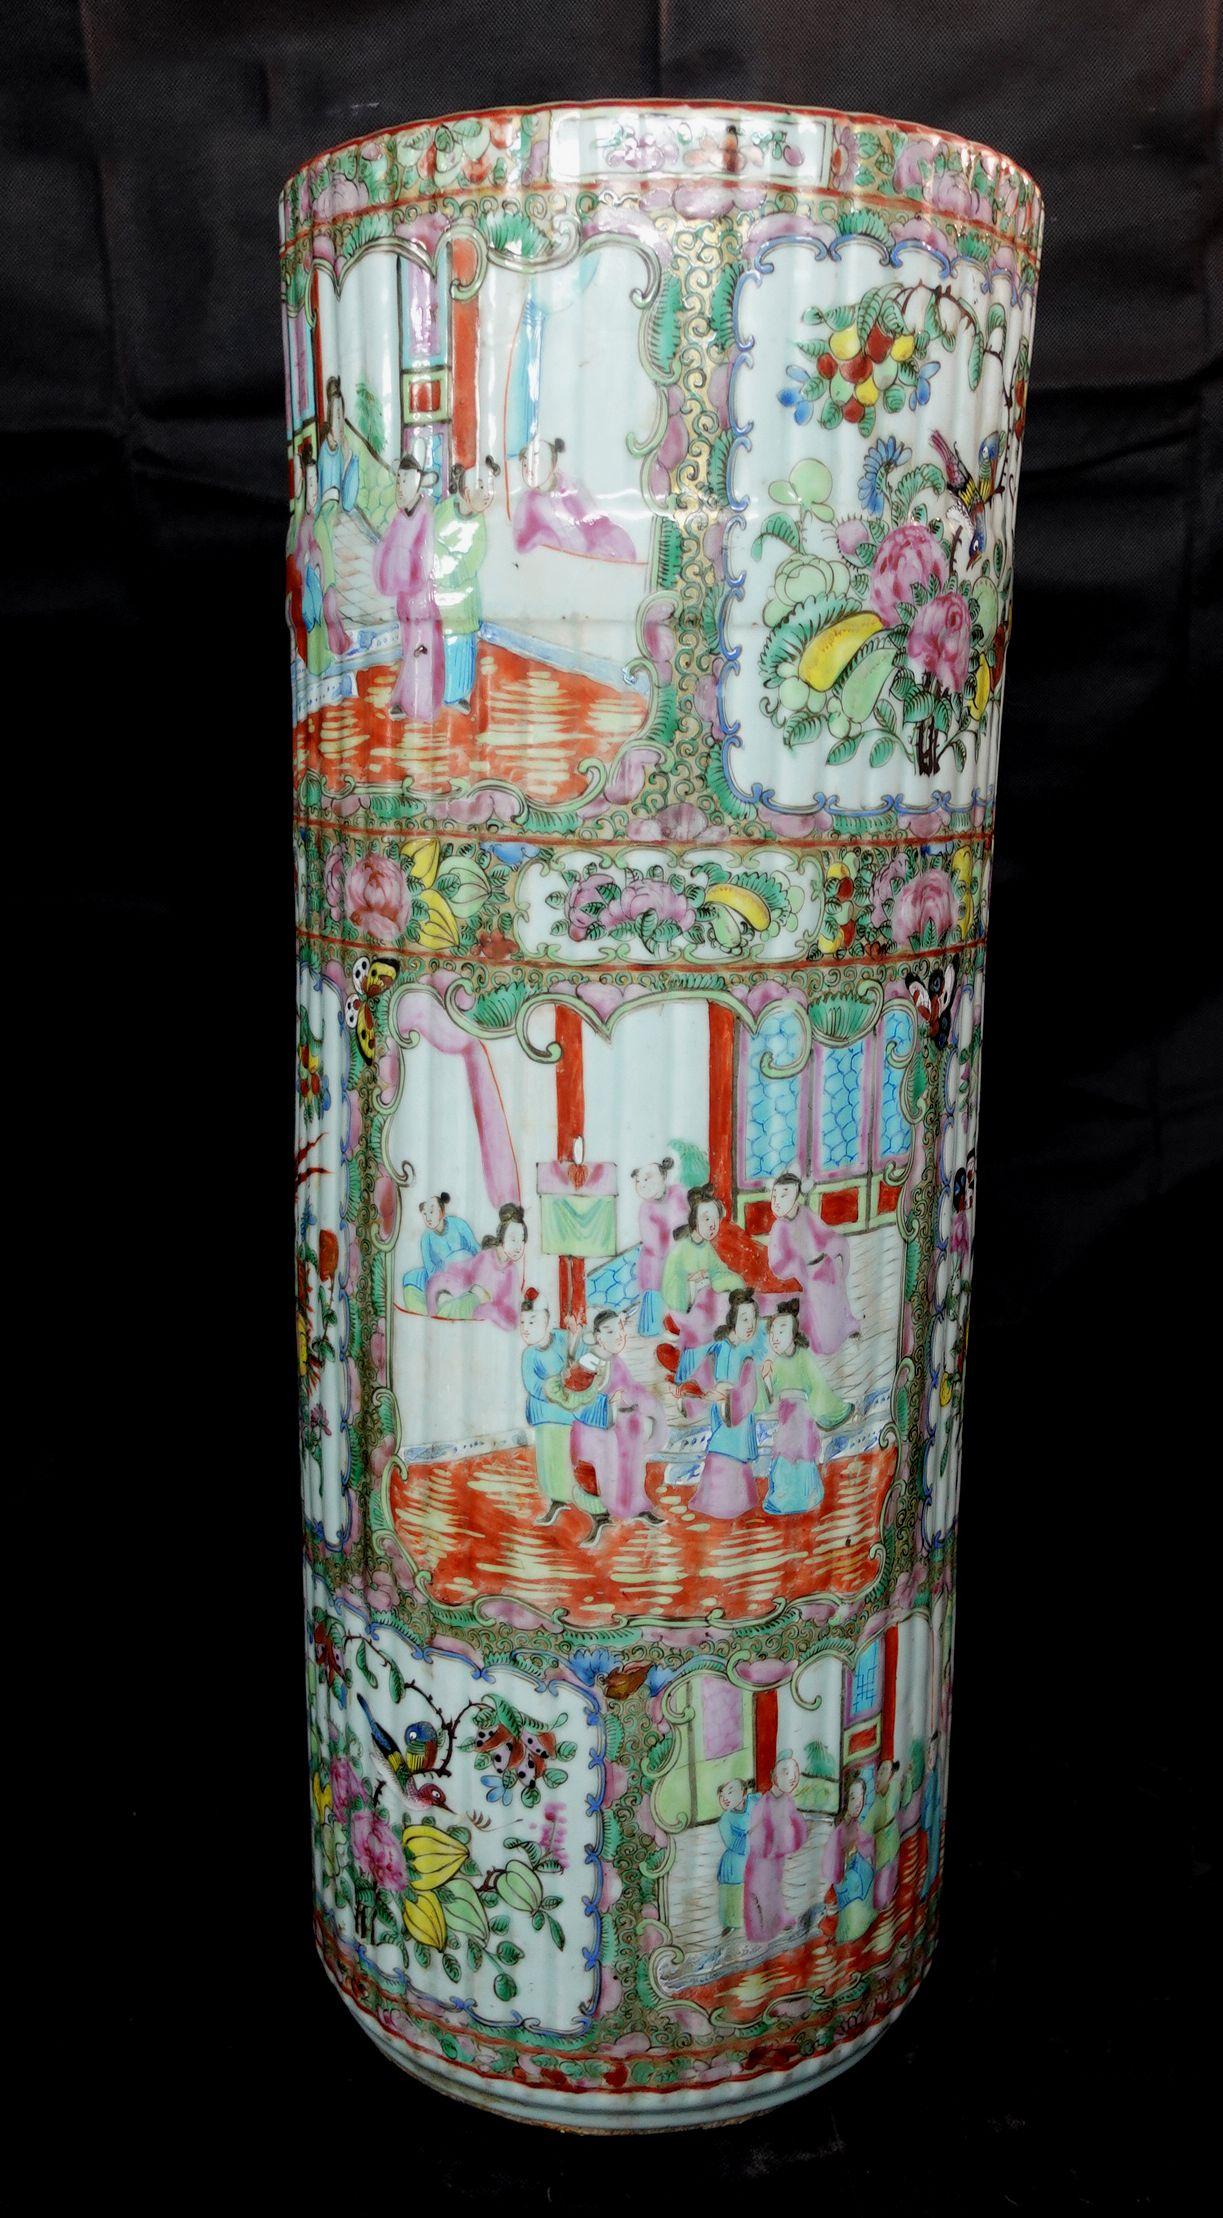 Porte-parapluies inhabituel en porcelaine d'exportation à médaillon rose, Chine, XIXe siècle, avec des bords extérieurs ondulés,
Mesures : hauteur 24, diamètre 9 pouces.

 